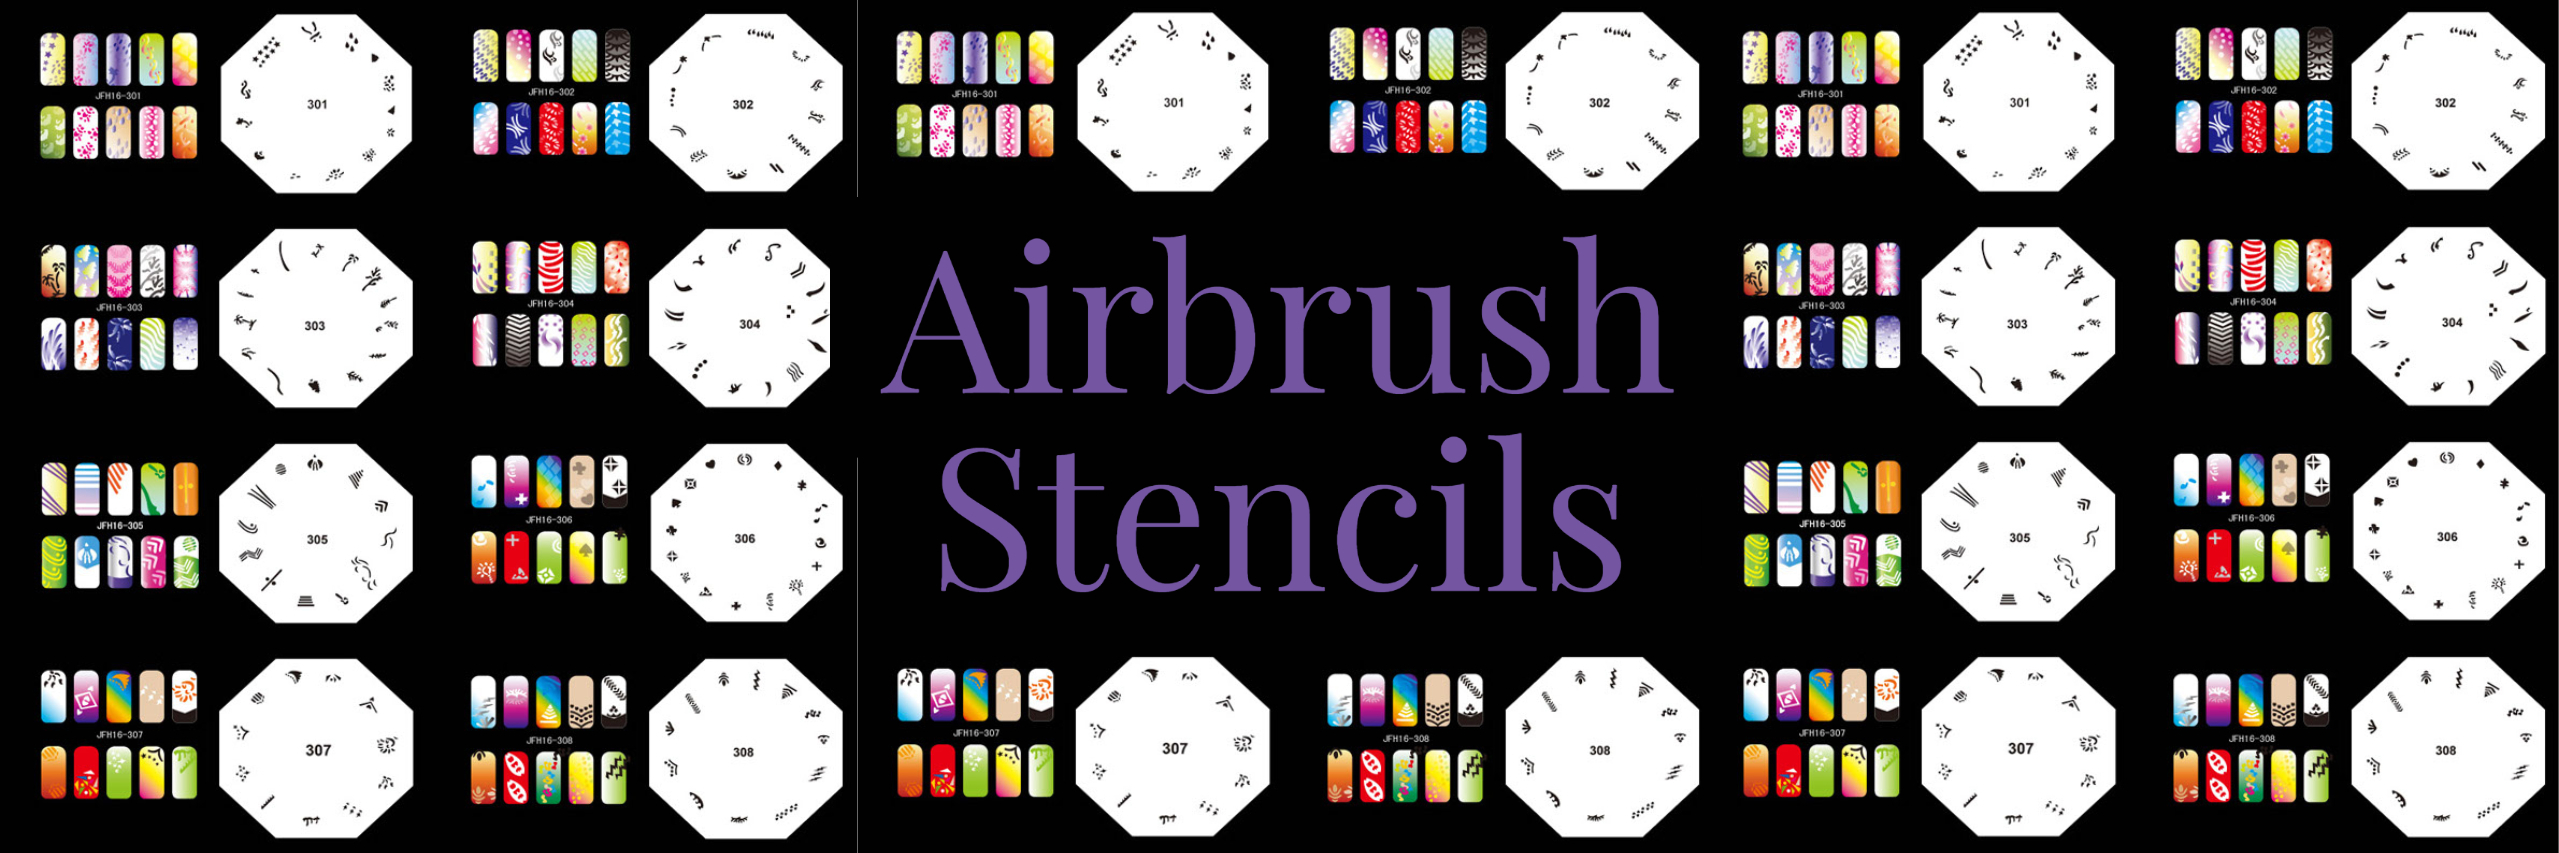 Airbrush Stencils  Vše pro modeláře Art Scale